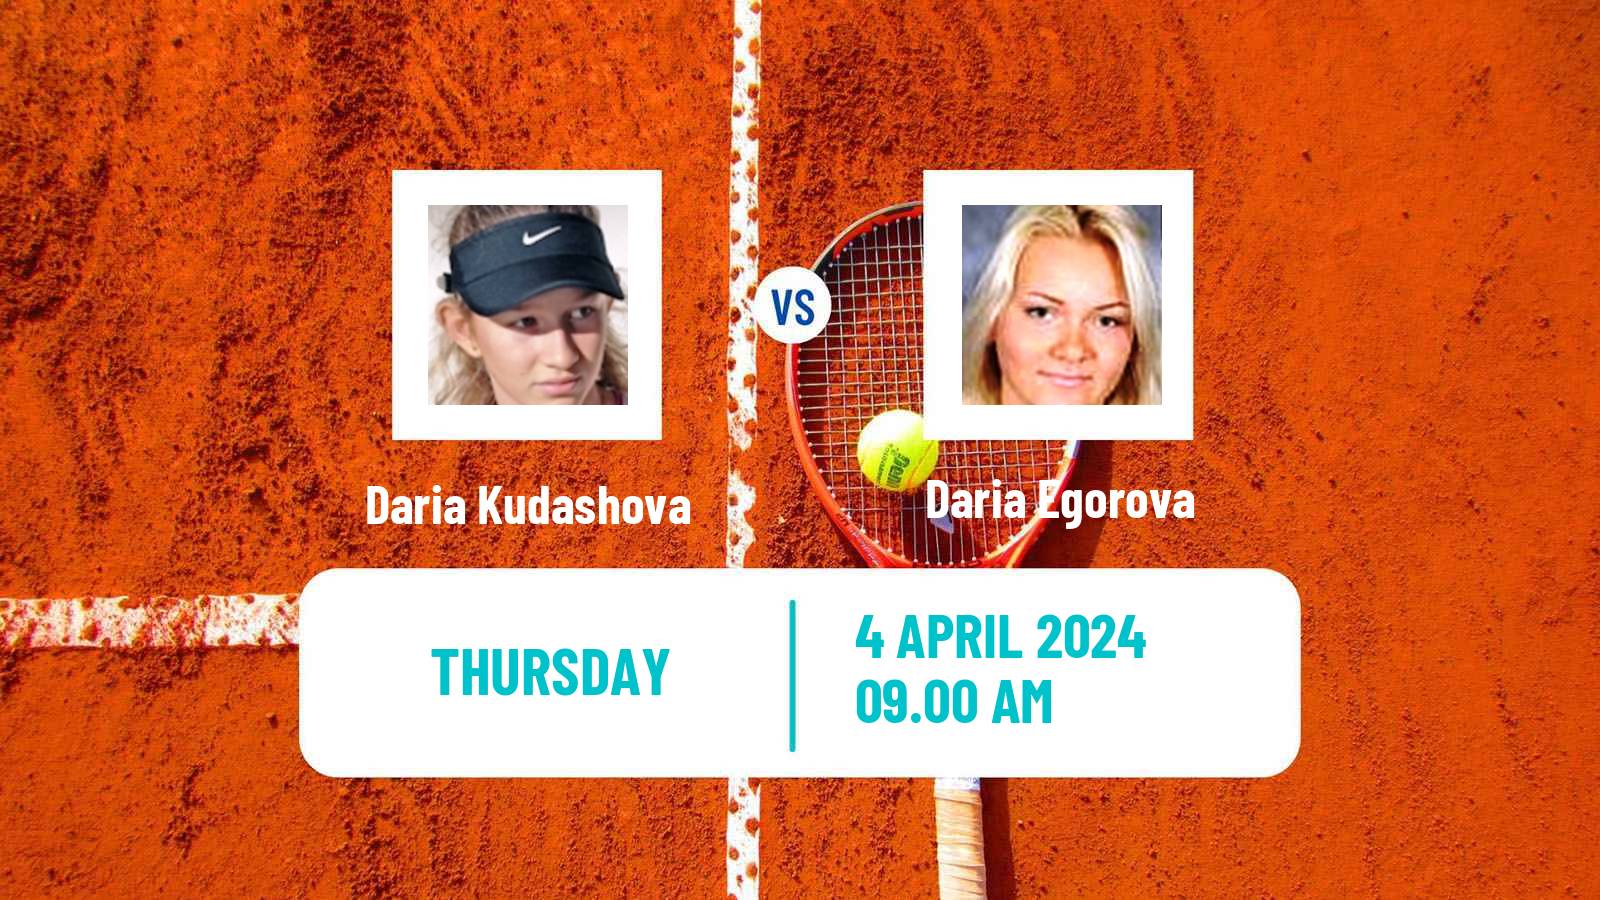 Tennis ITF W15 Antalya 8 Women Daria Kudashova - Daria Egorova